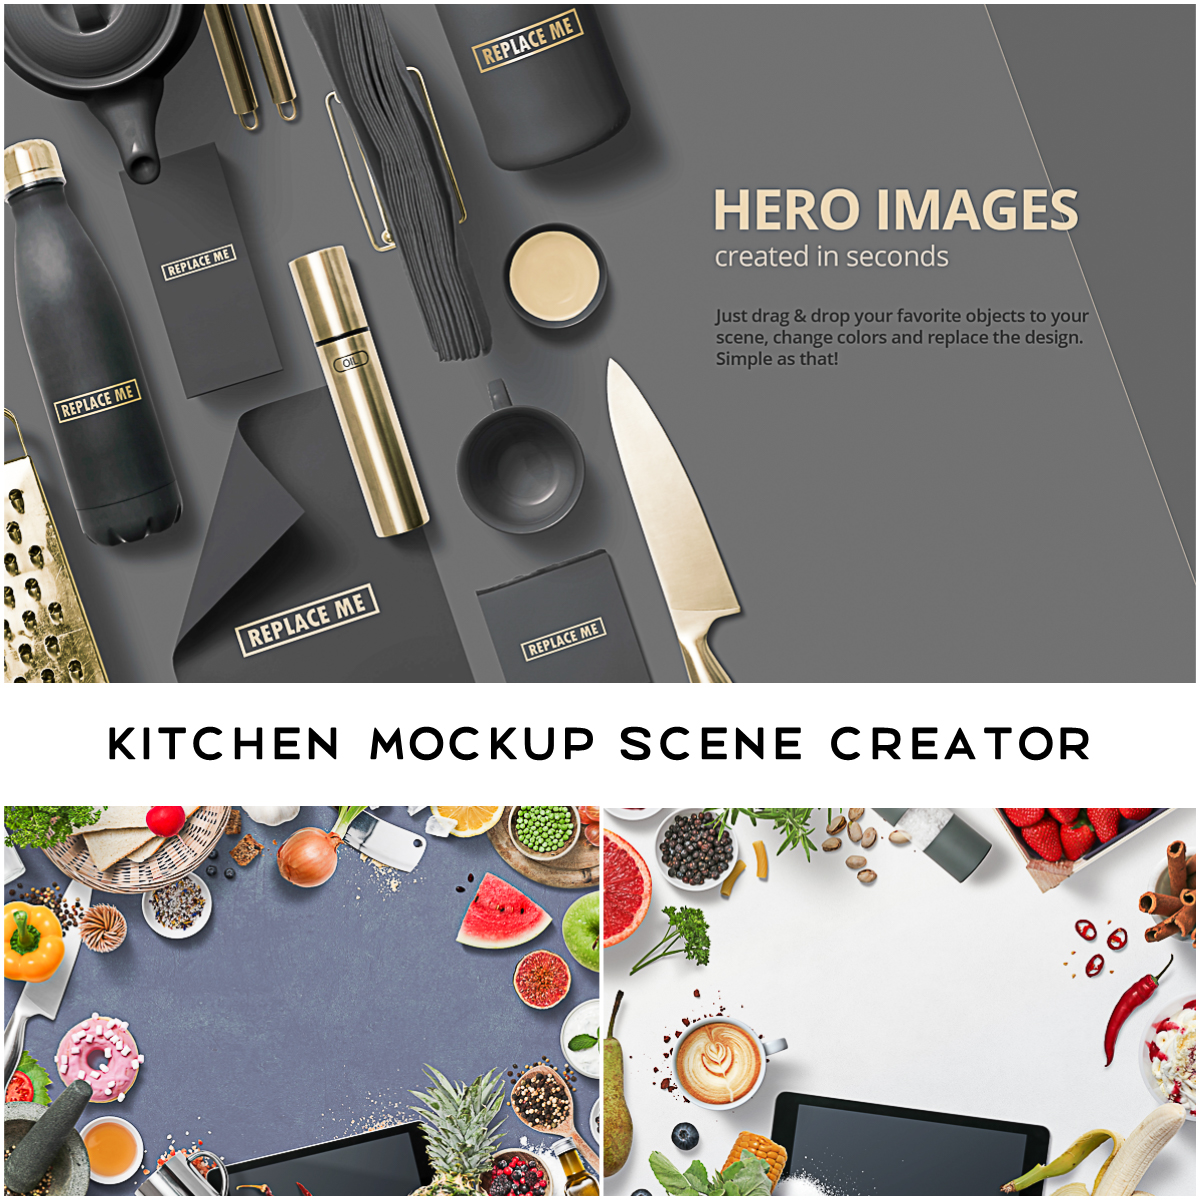 Kitchen Mockup Scene Creator | Free download